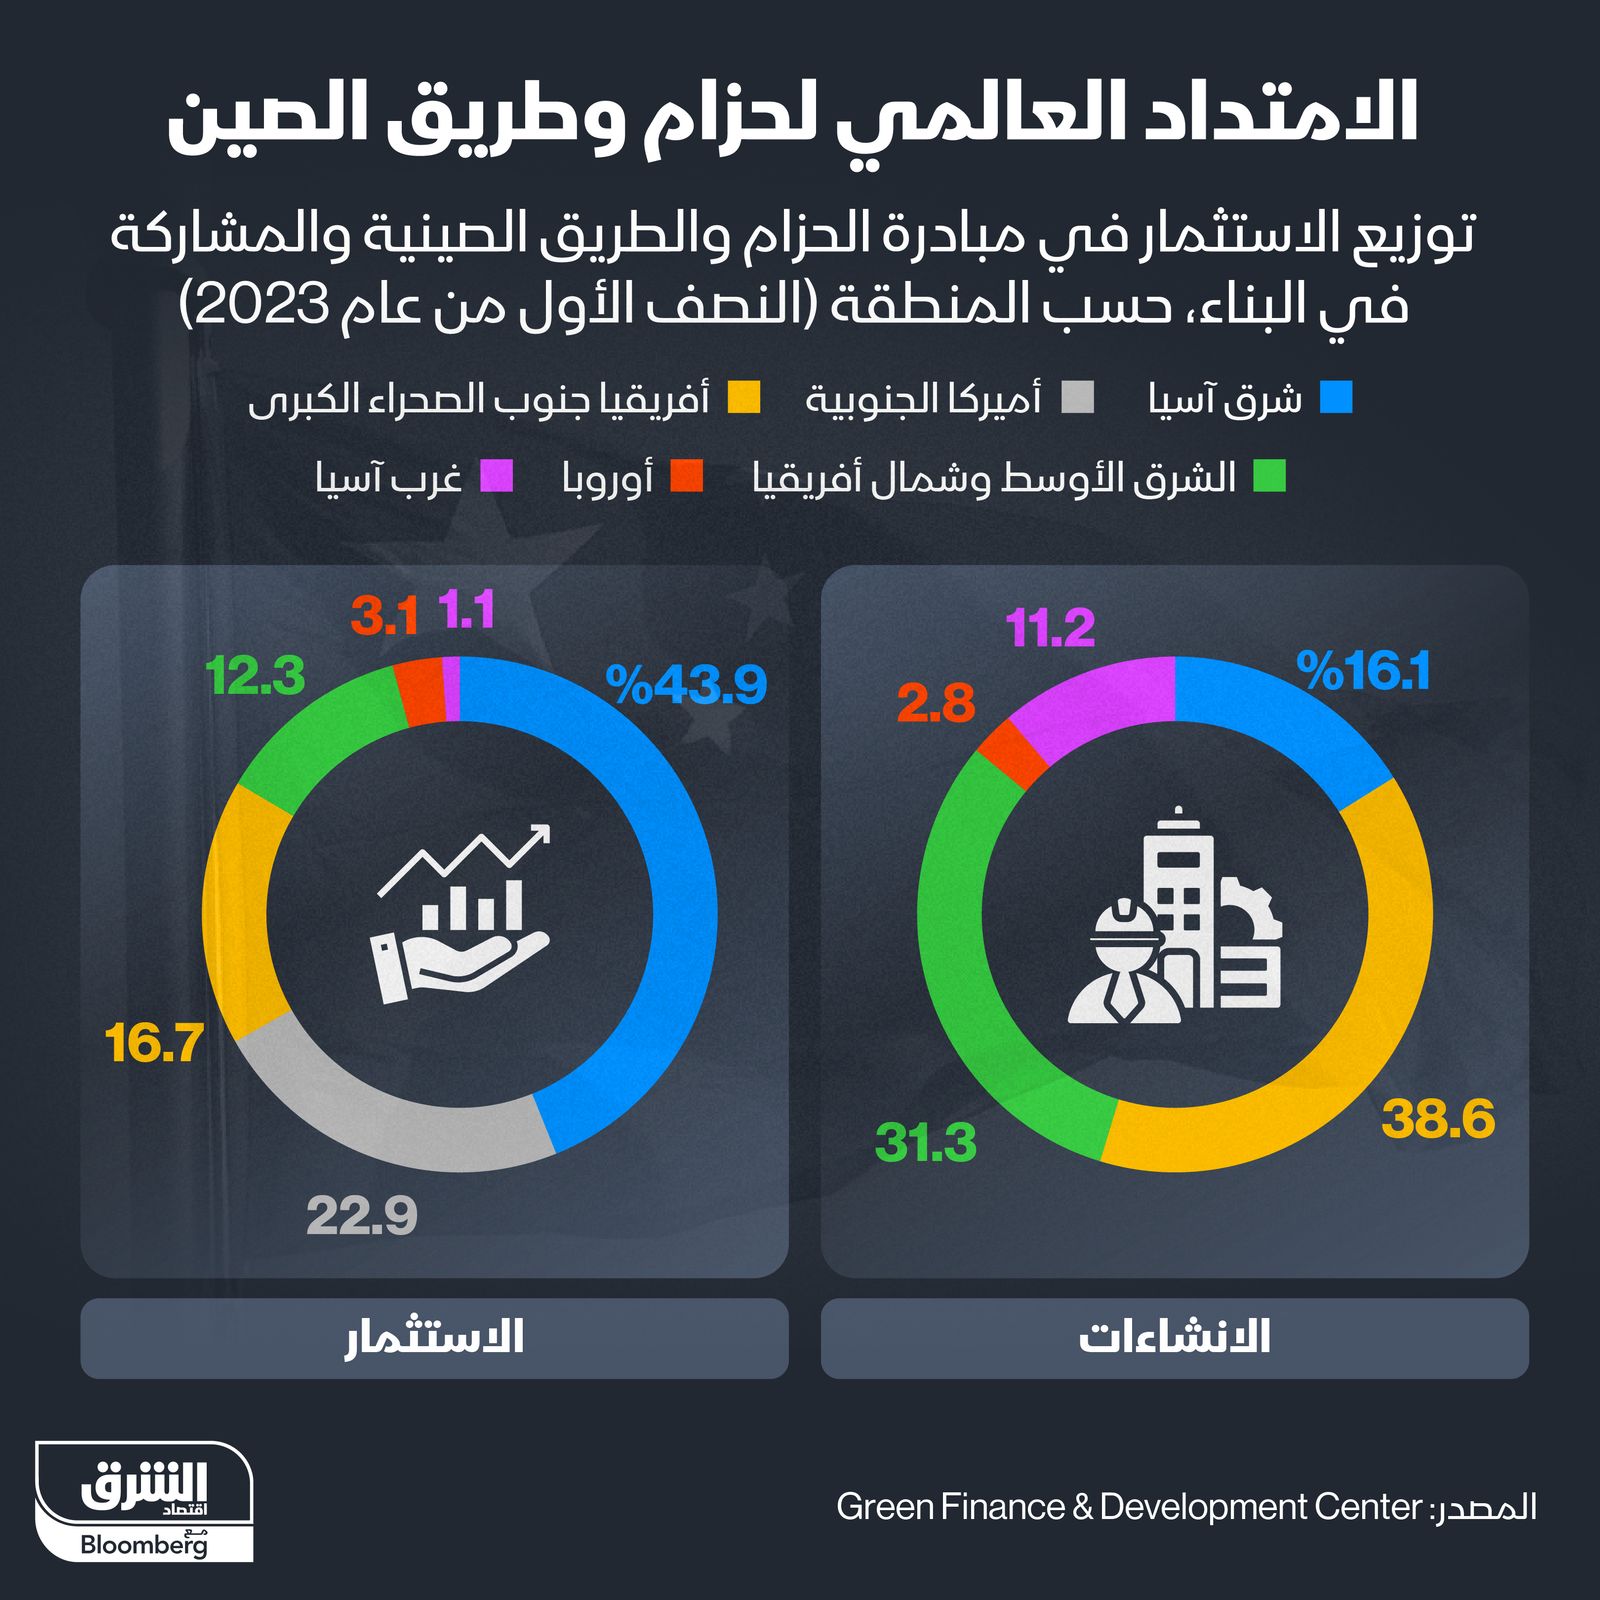 إنفوغراف: الشرق الأوسط وأفريقيا يستحوذان على 70% من إنشاءات 